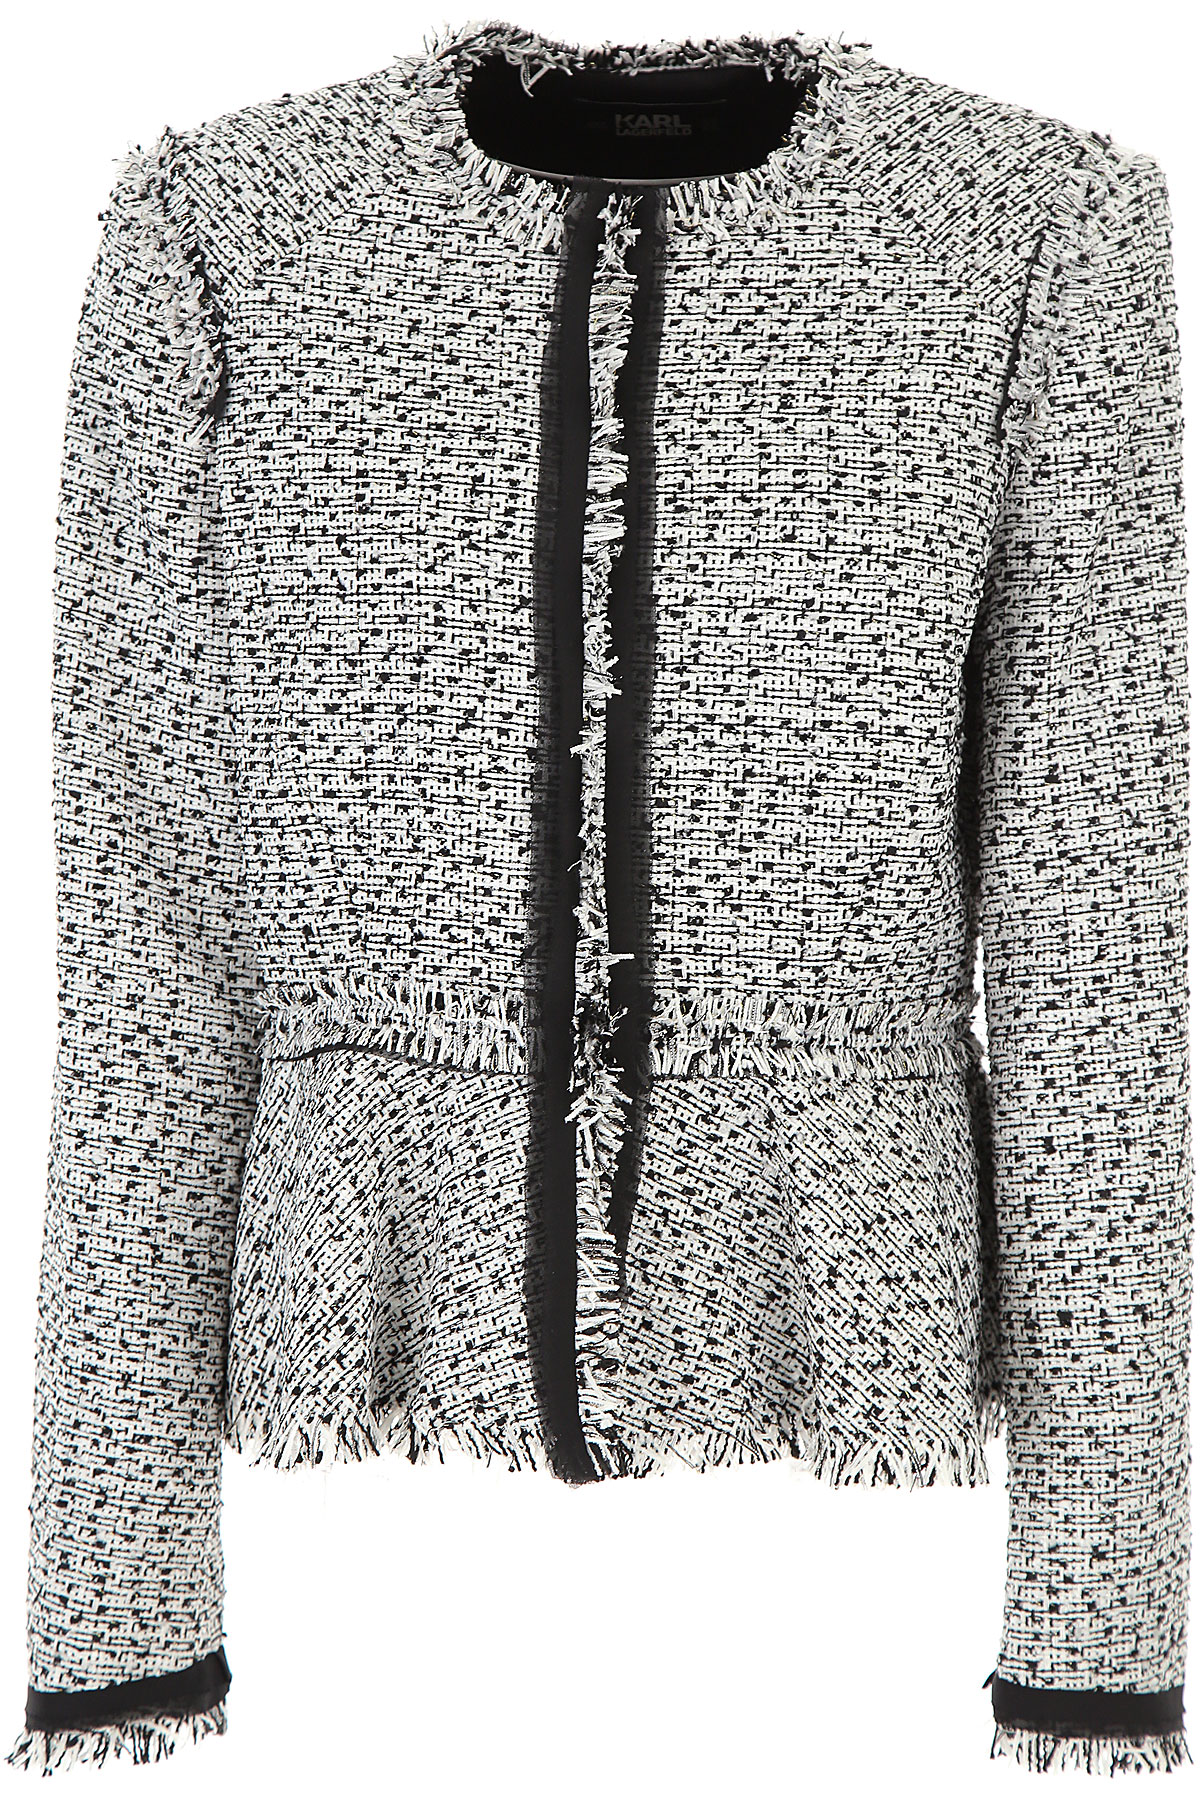 Karl Lagerfeld Jacke für Damen Günstig im Sale, Weiss, Polyester, 2017, 40 44 M